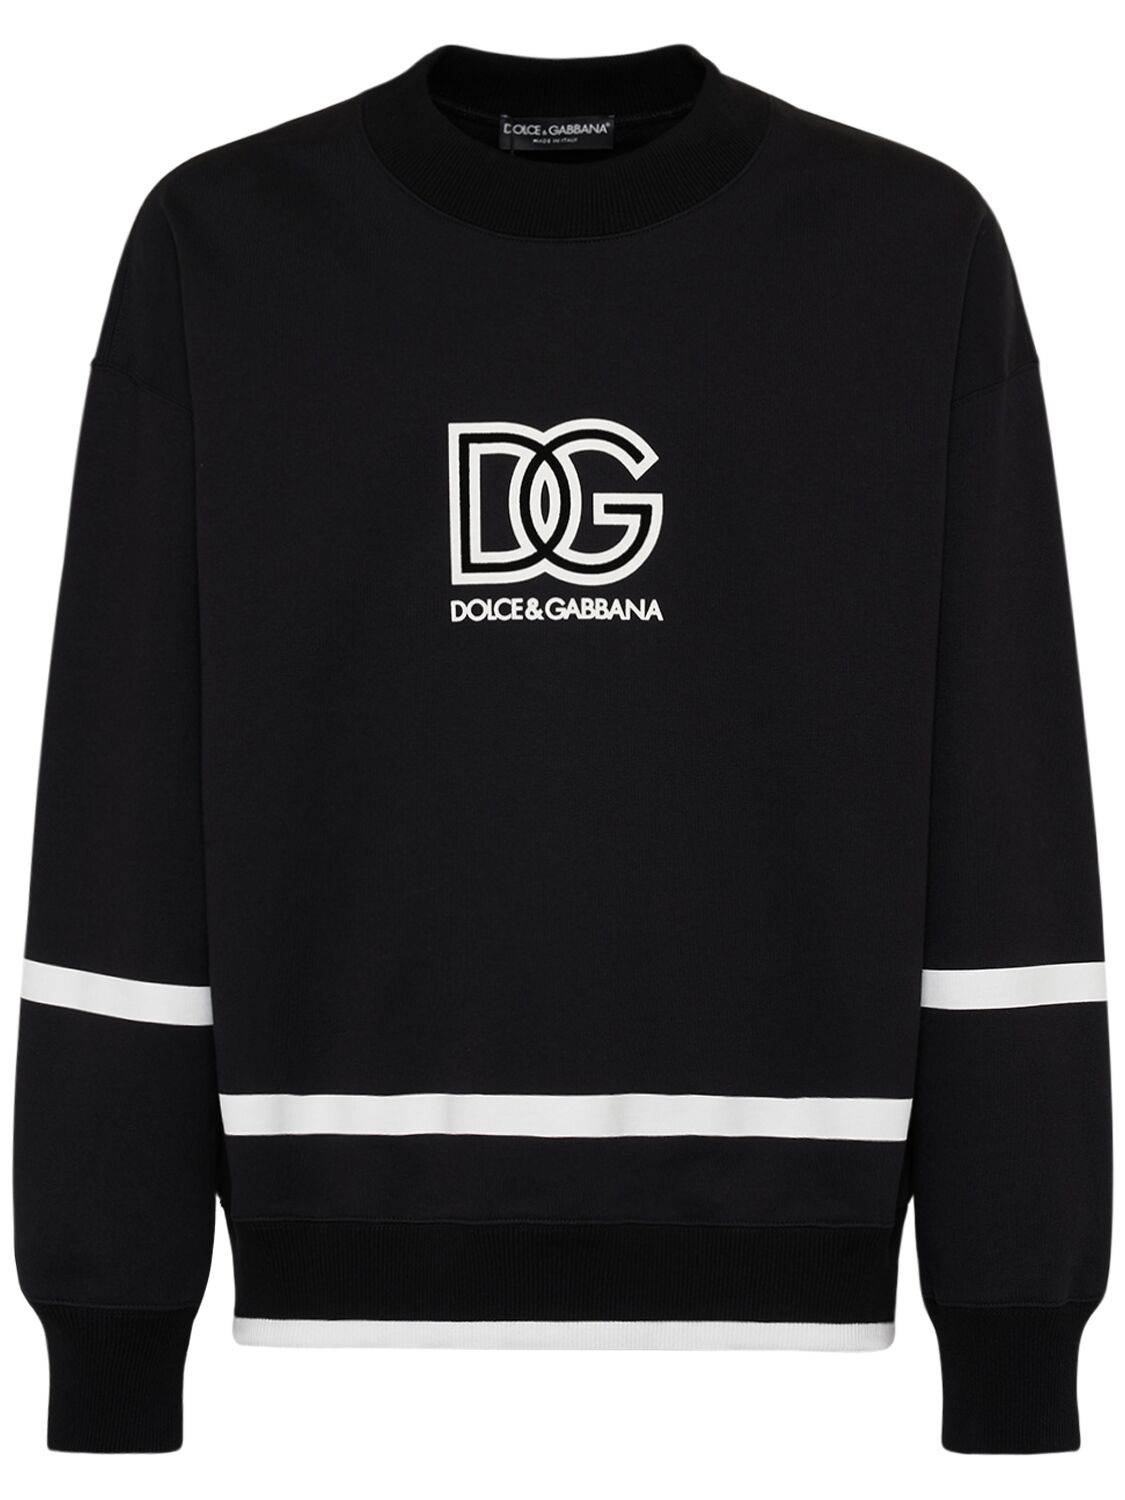 Dolce & Gabbana Sweatshirt Aus Baumwolljersey Mit Logo In Schwarz